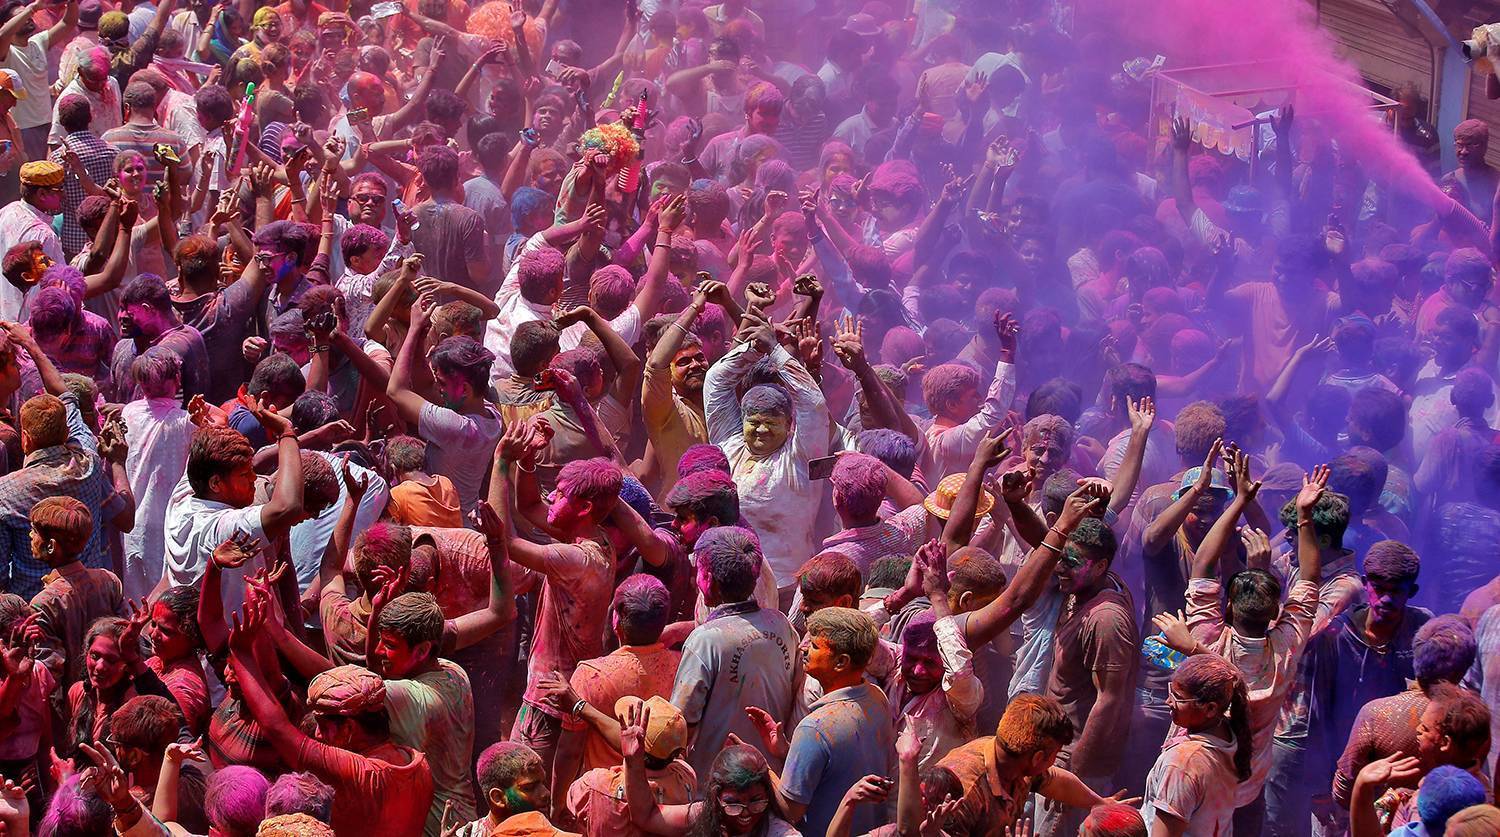 ★ фестиваль холи в индии 2019: самый красочный праздник в мире ★  - советы путешественникам